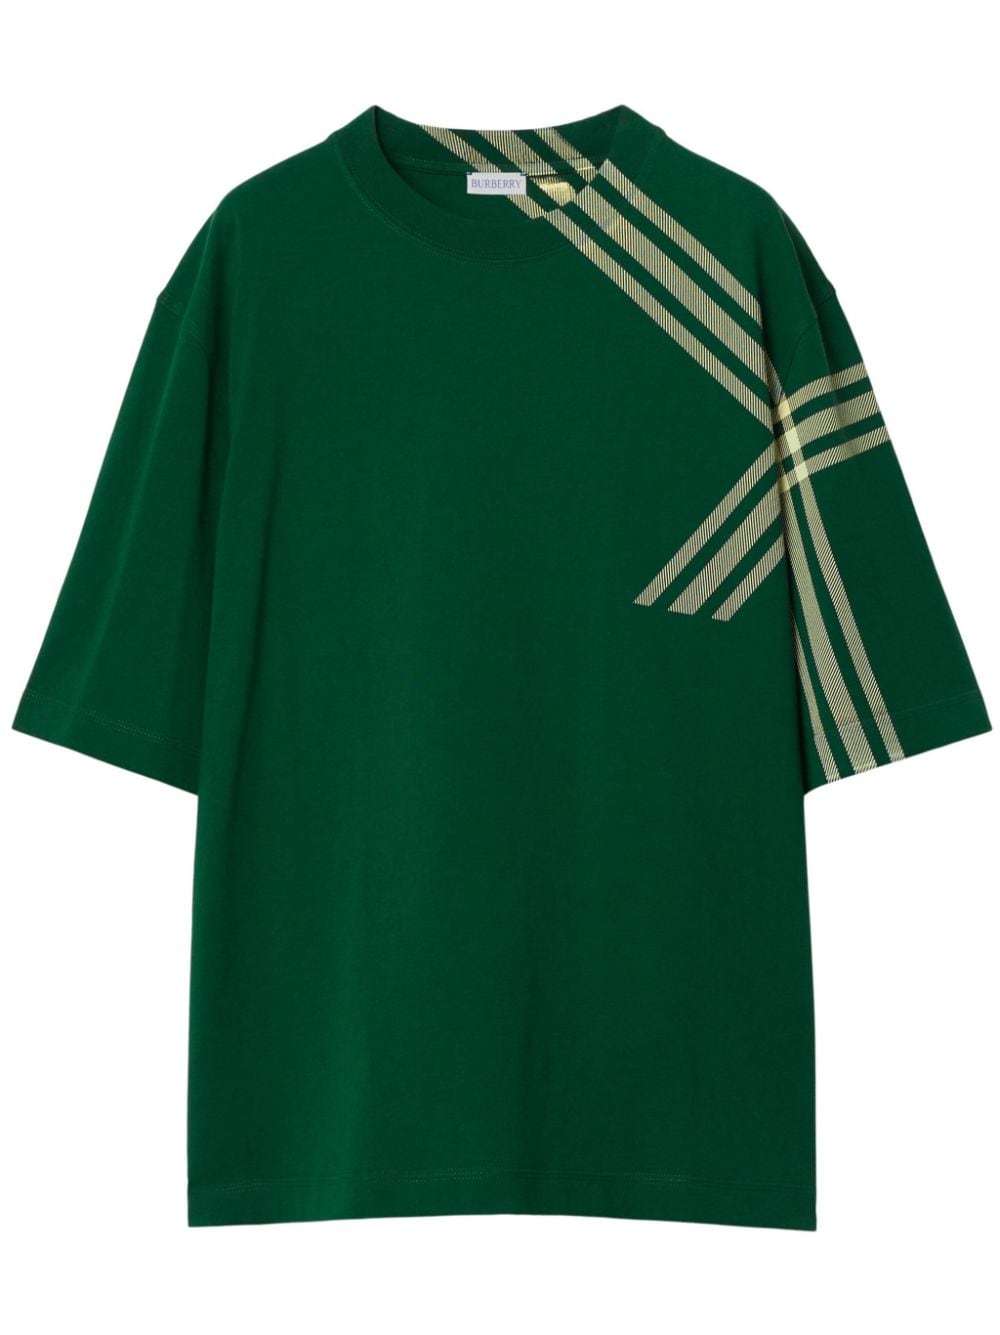 Burberry check-print cotton T-shirt - Green